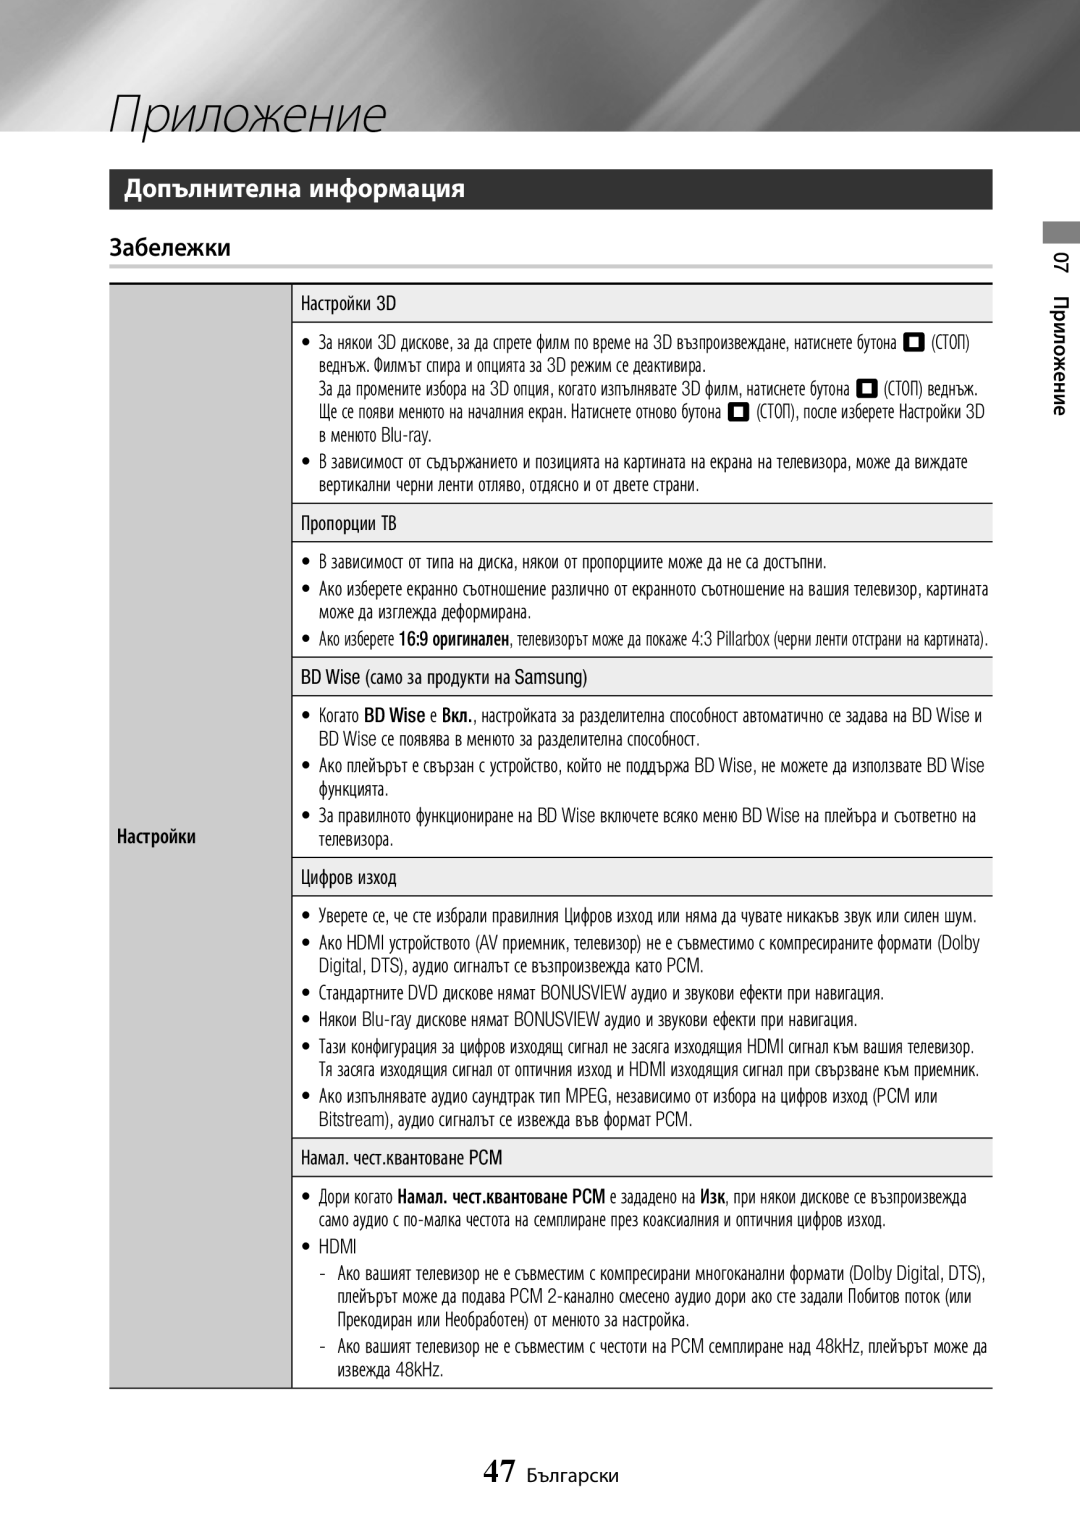 Samsung BD-J7500/EN manual Приложение, Допълнителна информация, Забележки 